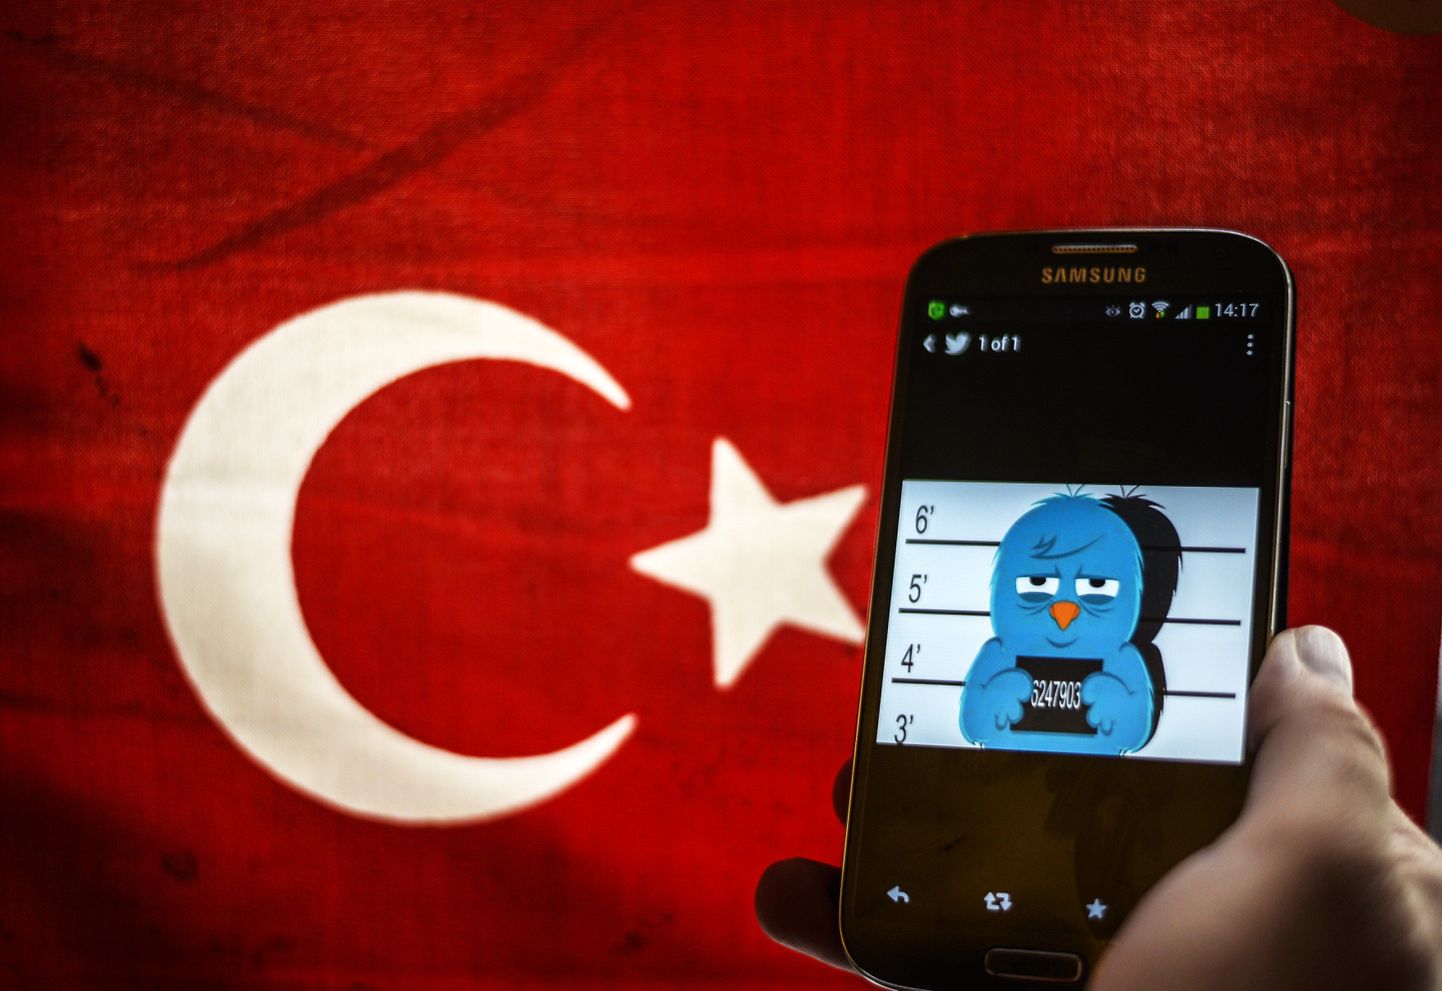 Türgi lipp koos Twitteri linnukesega.